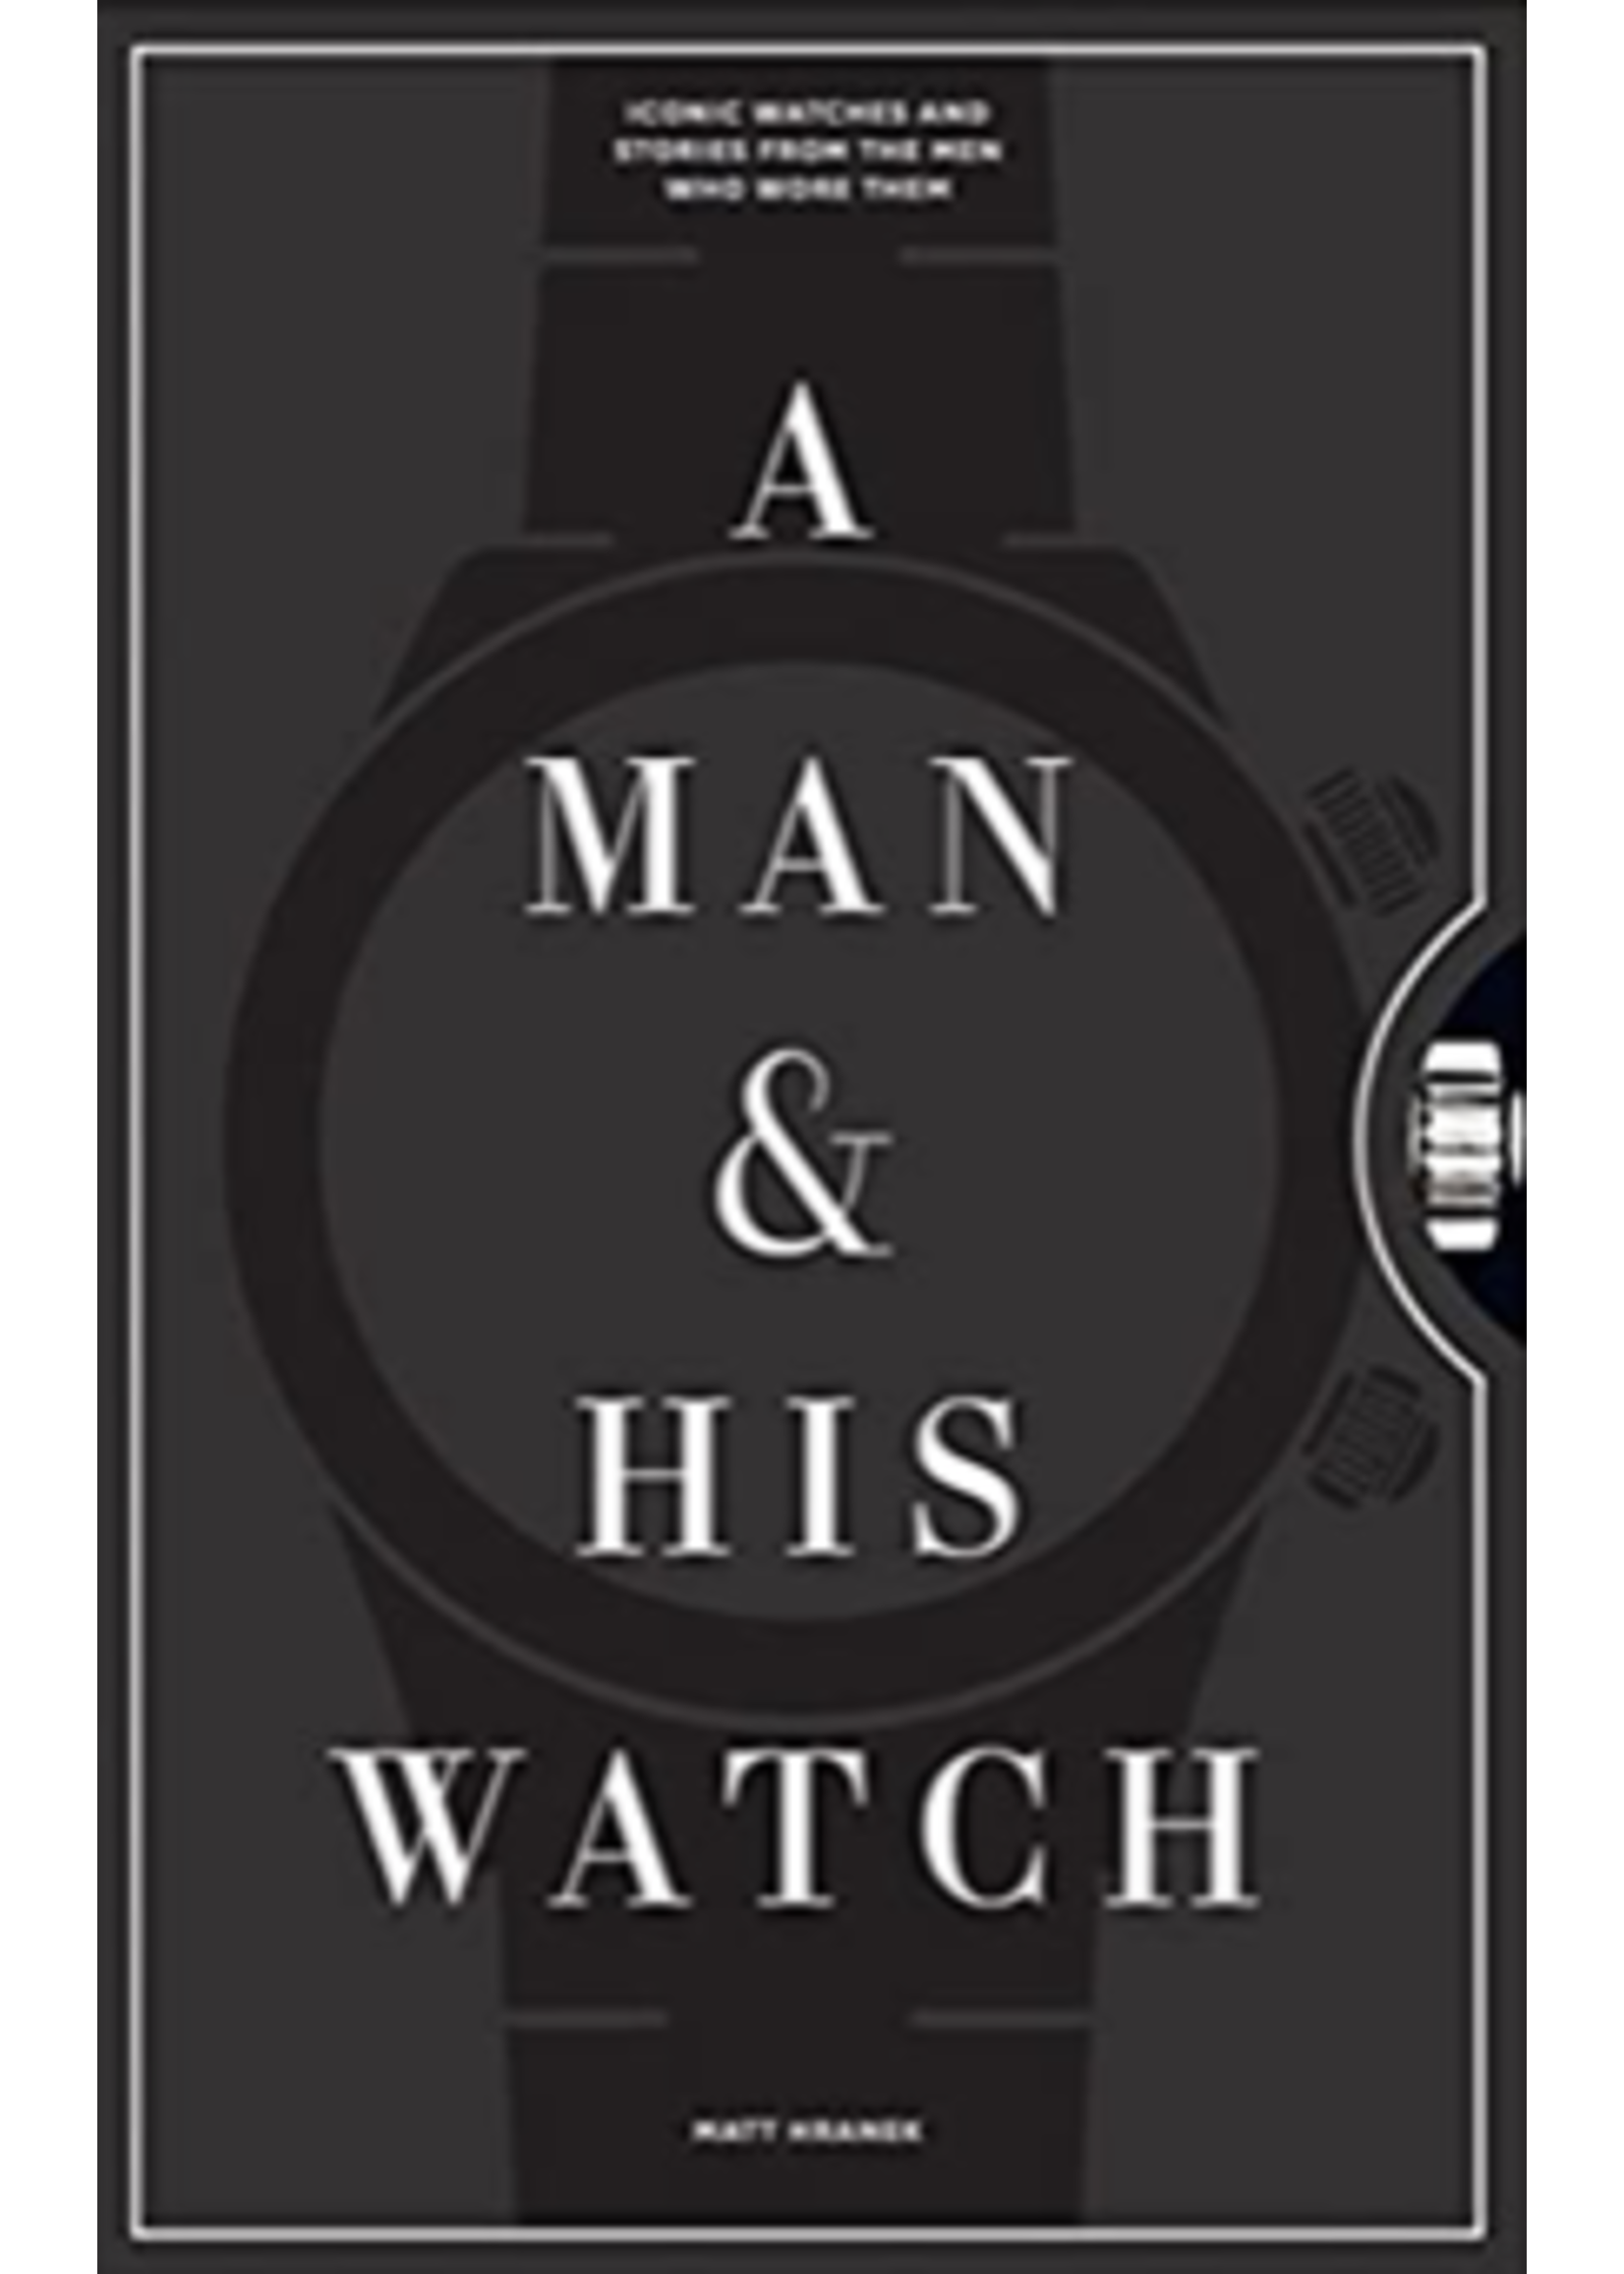 Website A Man & His Watch